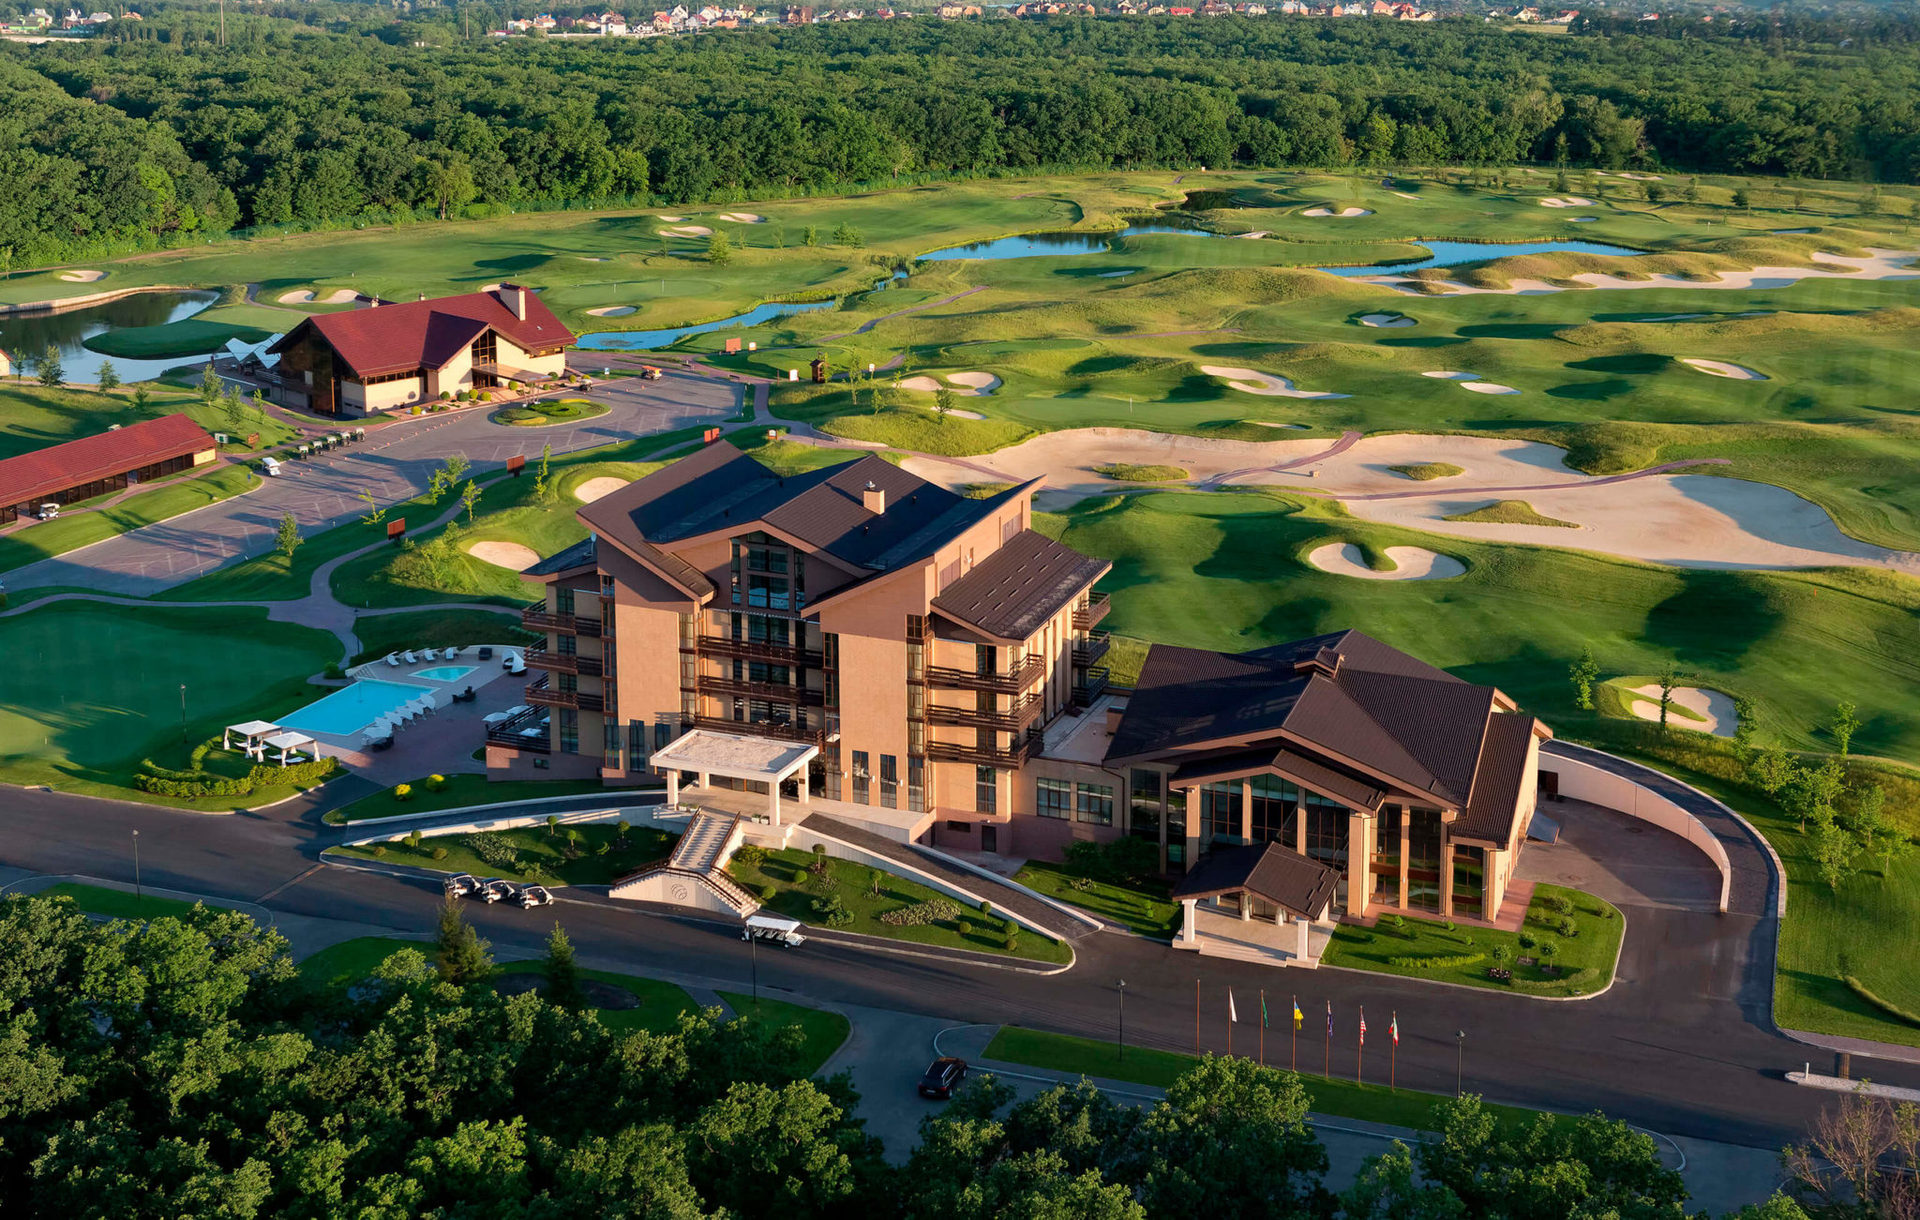 Єдиний в Україні гольф-курорт, який включає п'ятизірковий бутик-готель, гольф-клуб Superior та ресторан вишуканої європейської кухні Albatross.